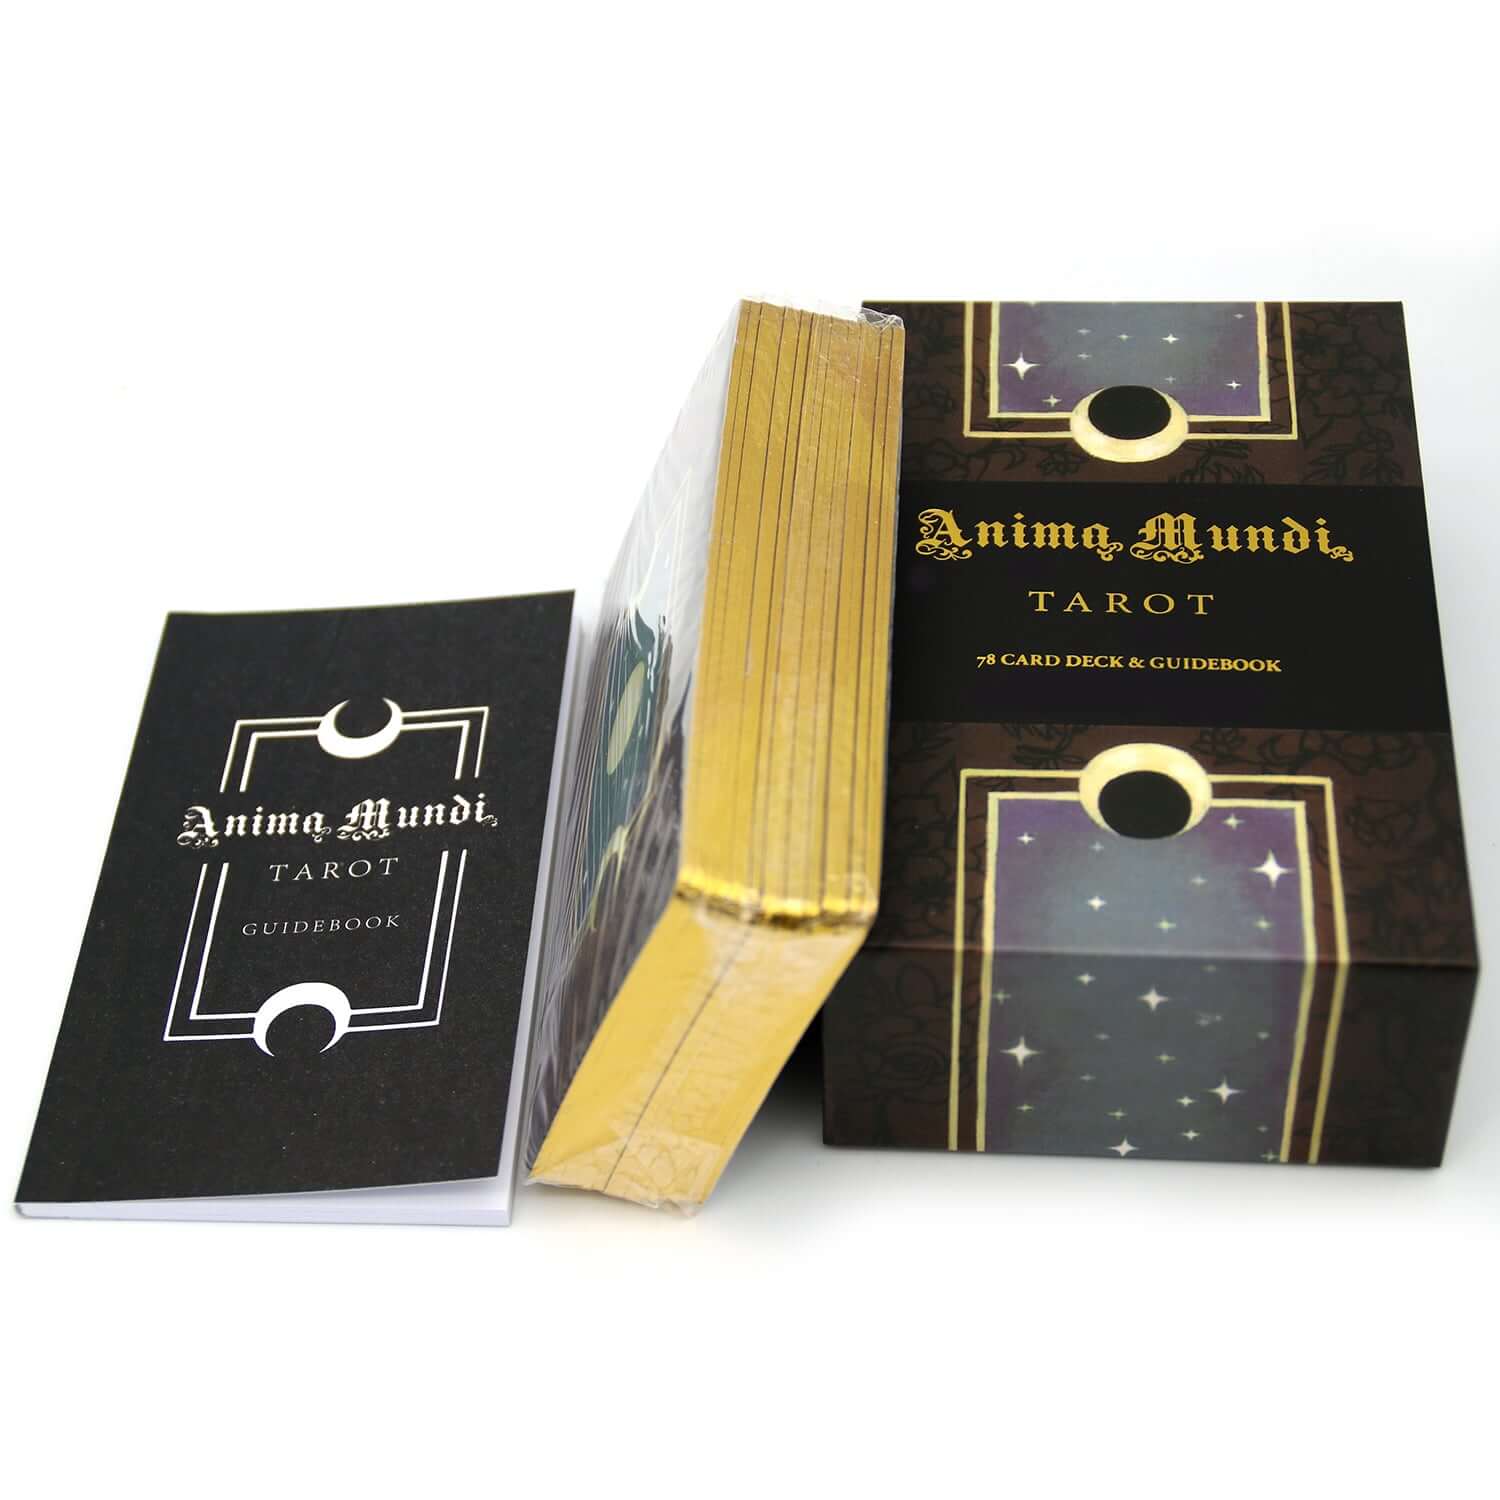 Anima Mundi Tarot Deck 78 Card Deck With Guide Book Original Size - TAROT DECK